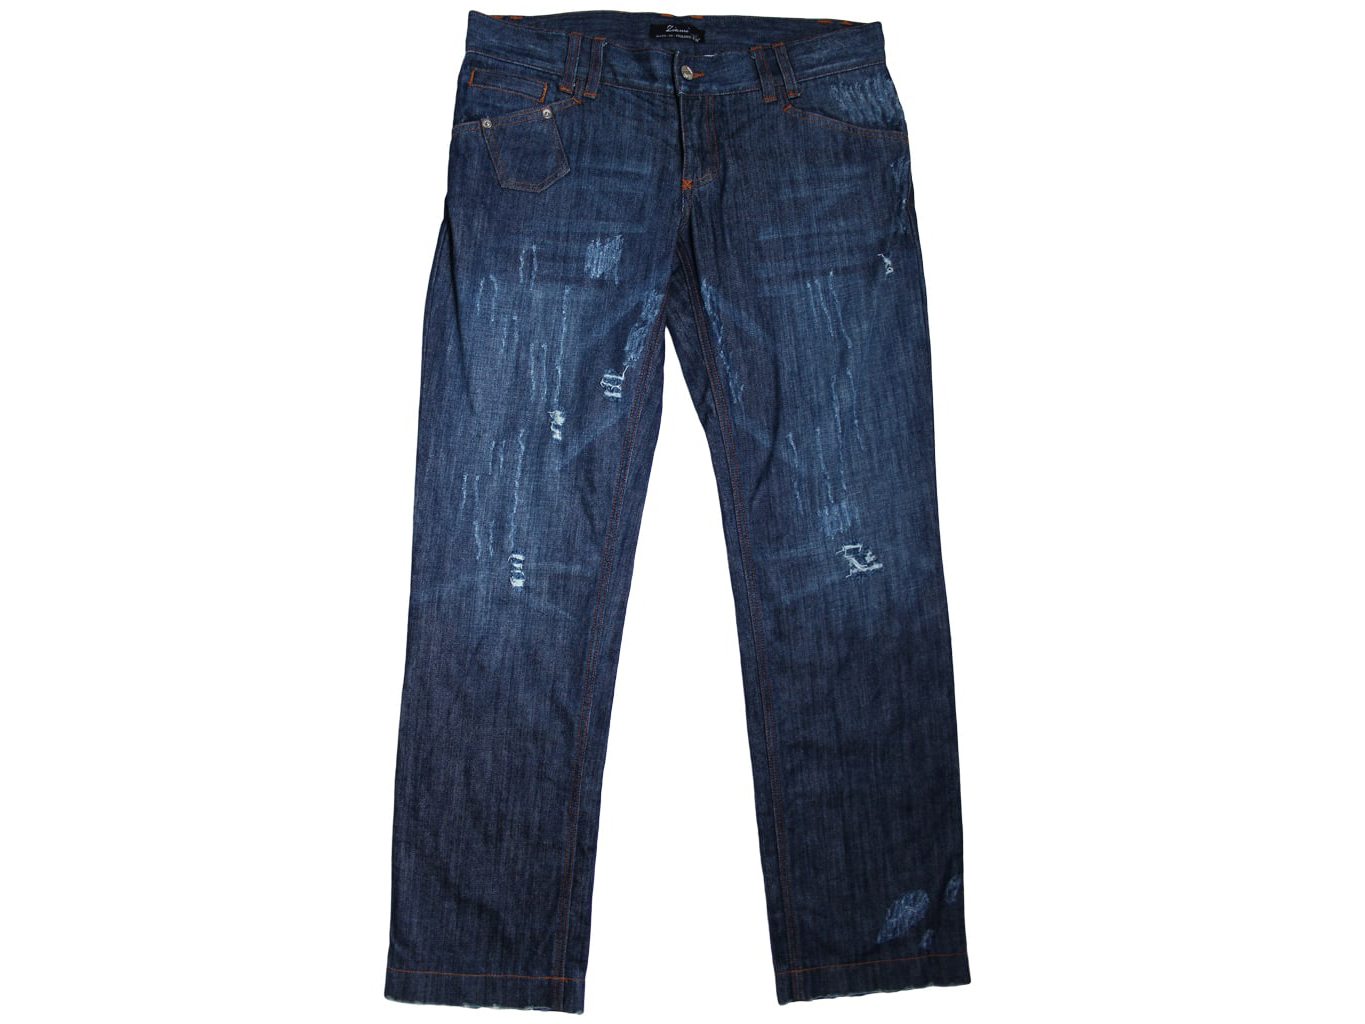 Женские джинсы с разрезами или вырезами — купить в интернет-магазине Ламода